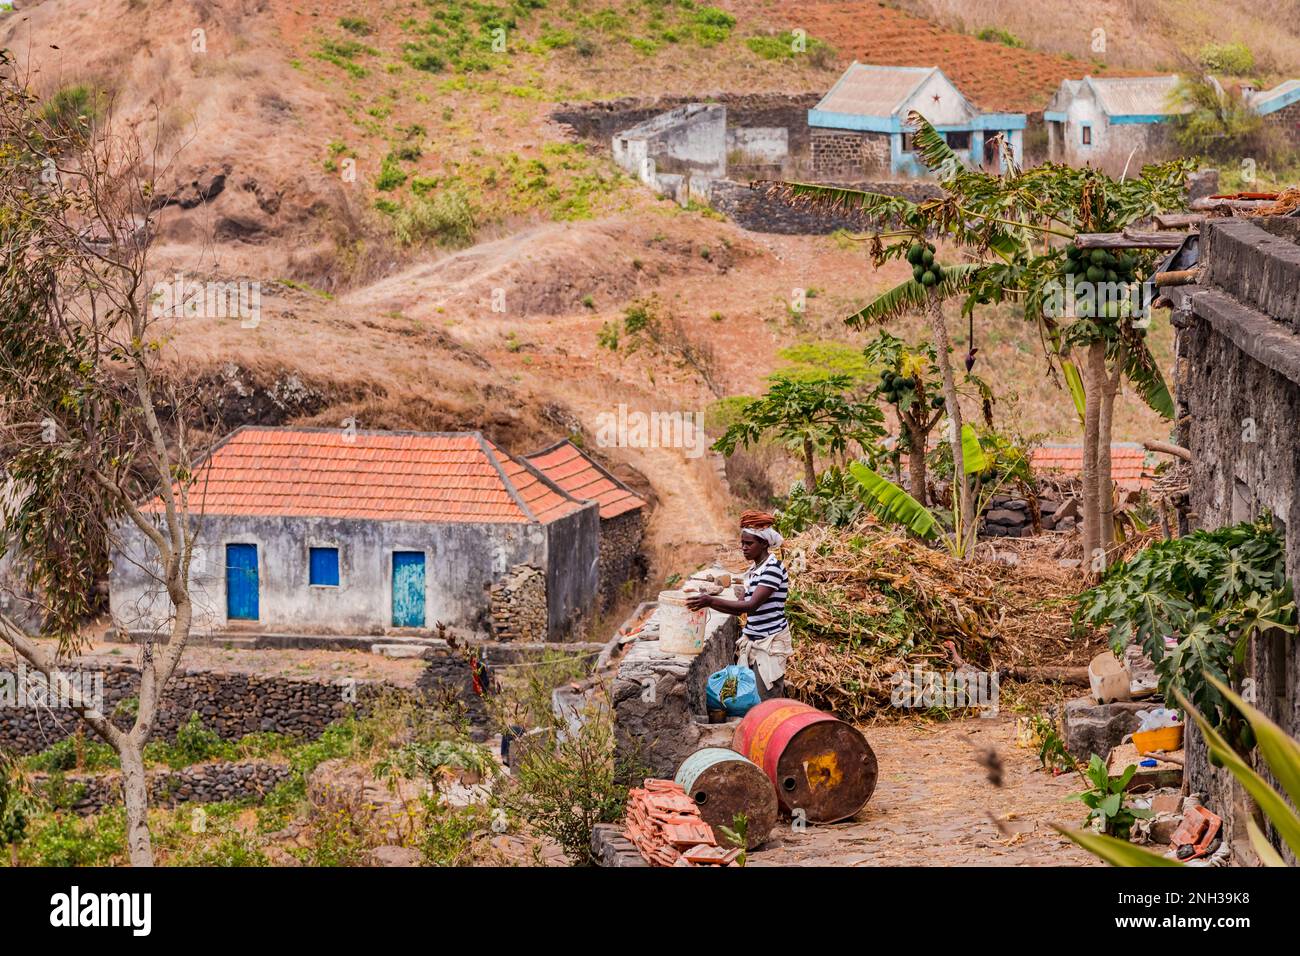 Une femme au travail devant une maison simple dans le centre accidenté et montagneux de l'île de Santiago, les îles du Cap-Vert, la Macaronesia Banque D'Images